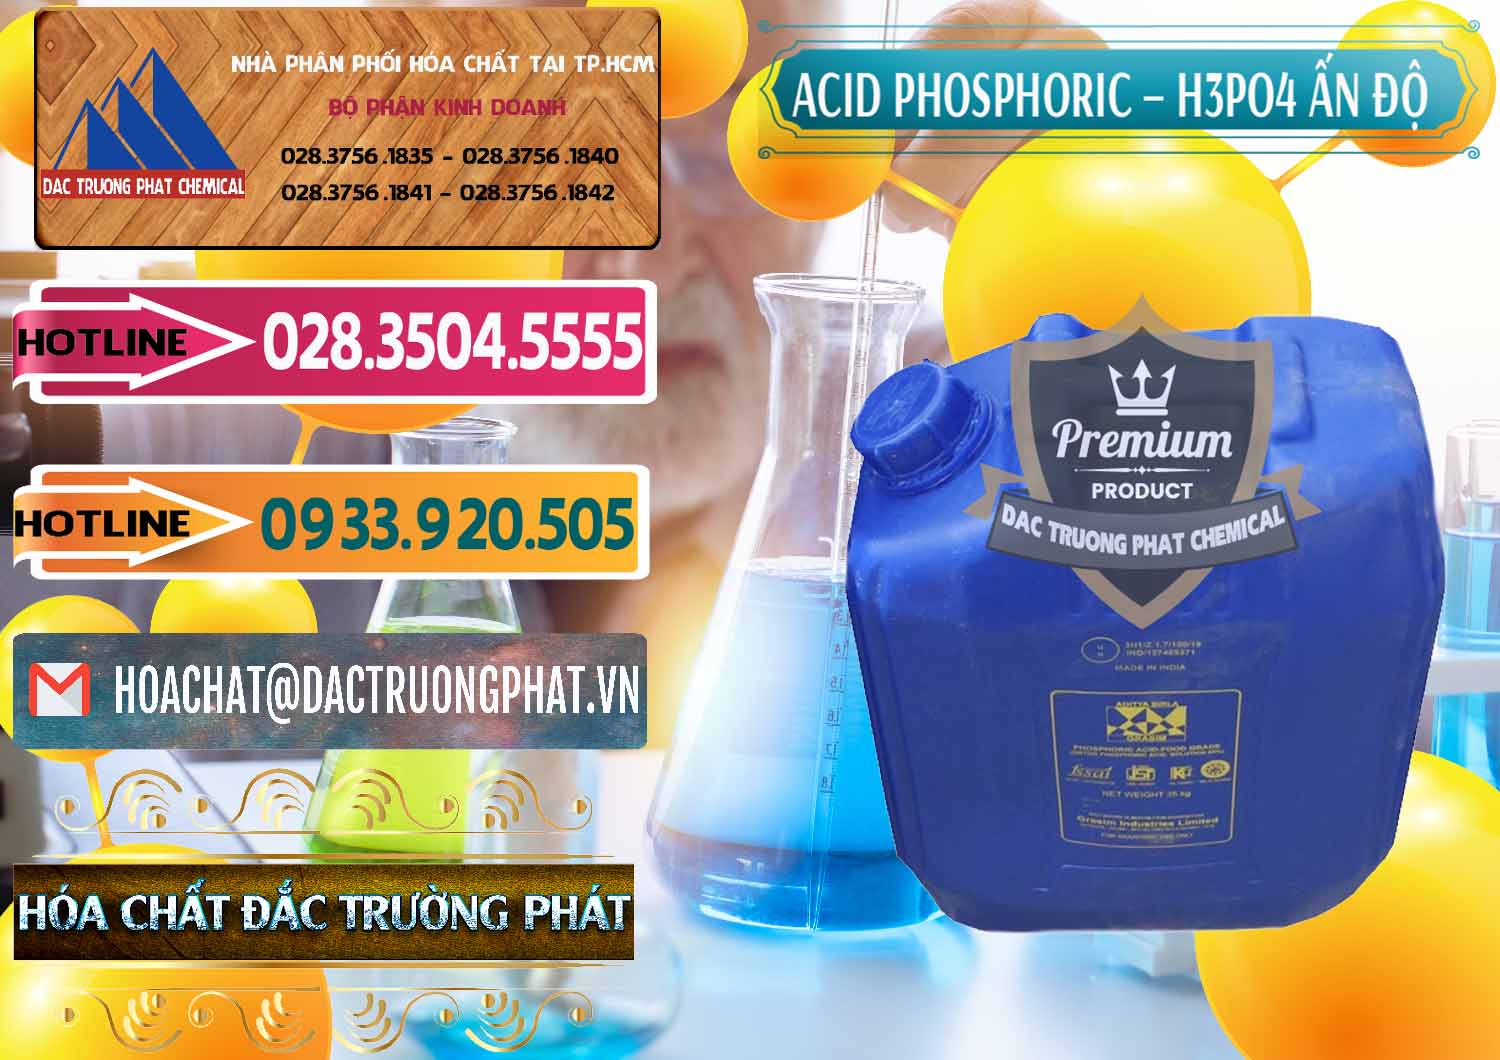 Cty chuyên cung ứng _ bán Axit Phosphoric H3PO4 85% Ấn Độ - 0350 - Công ty chuyên nhập khẩu ( cung cấp ) hóa chất tại TP.HCM - dactruongphat.vn